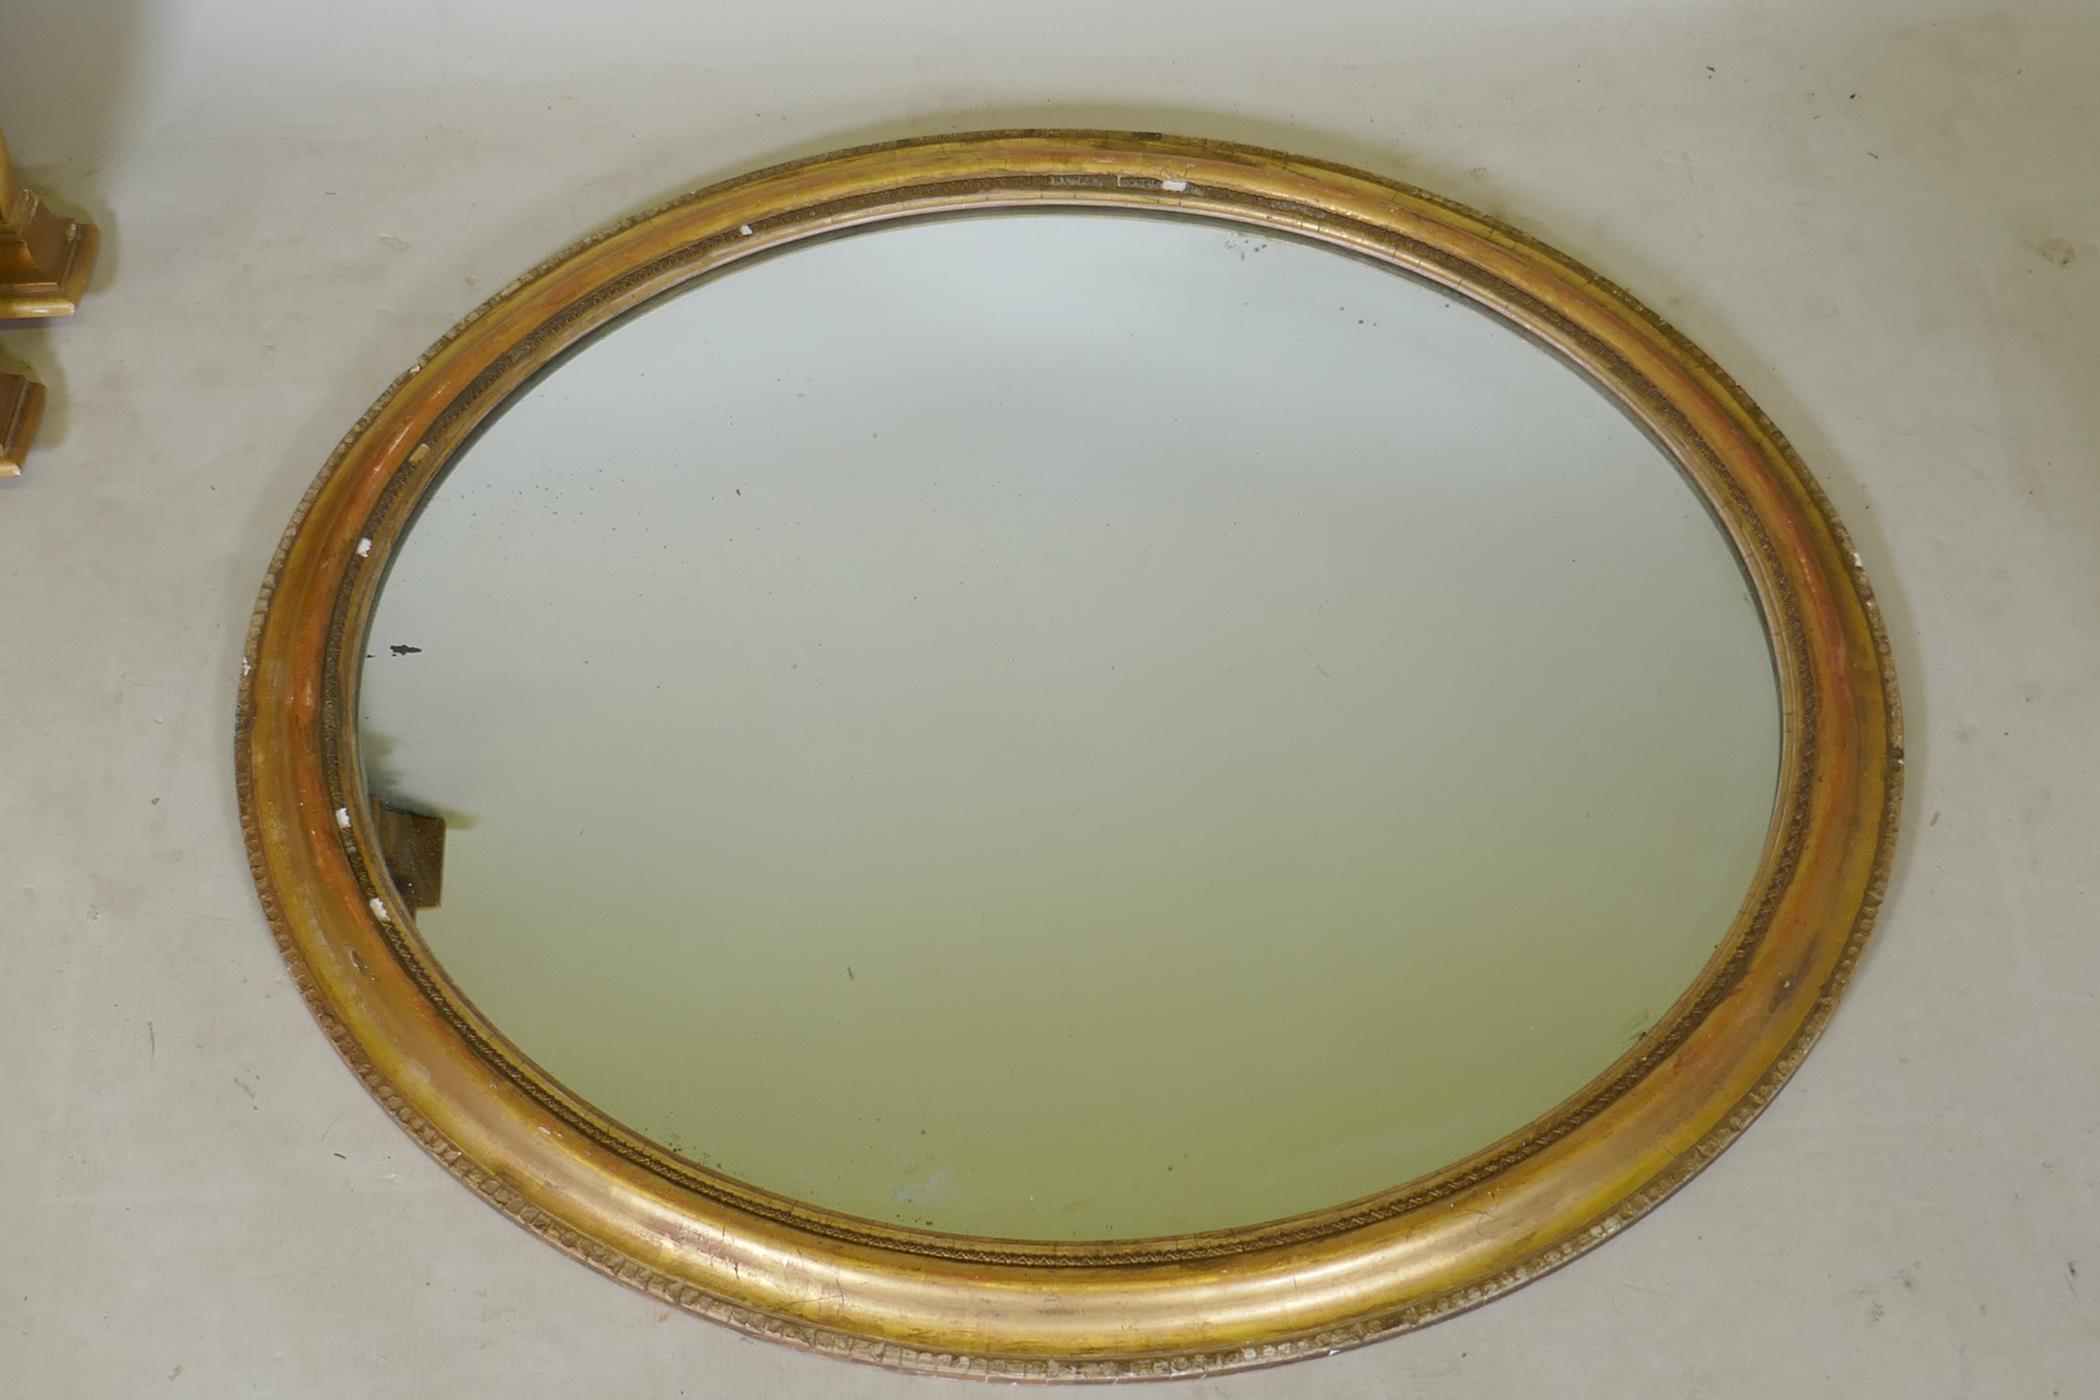 A gilt framed oval wall mirror, 89cm x 78cm